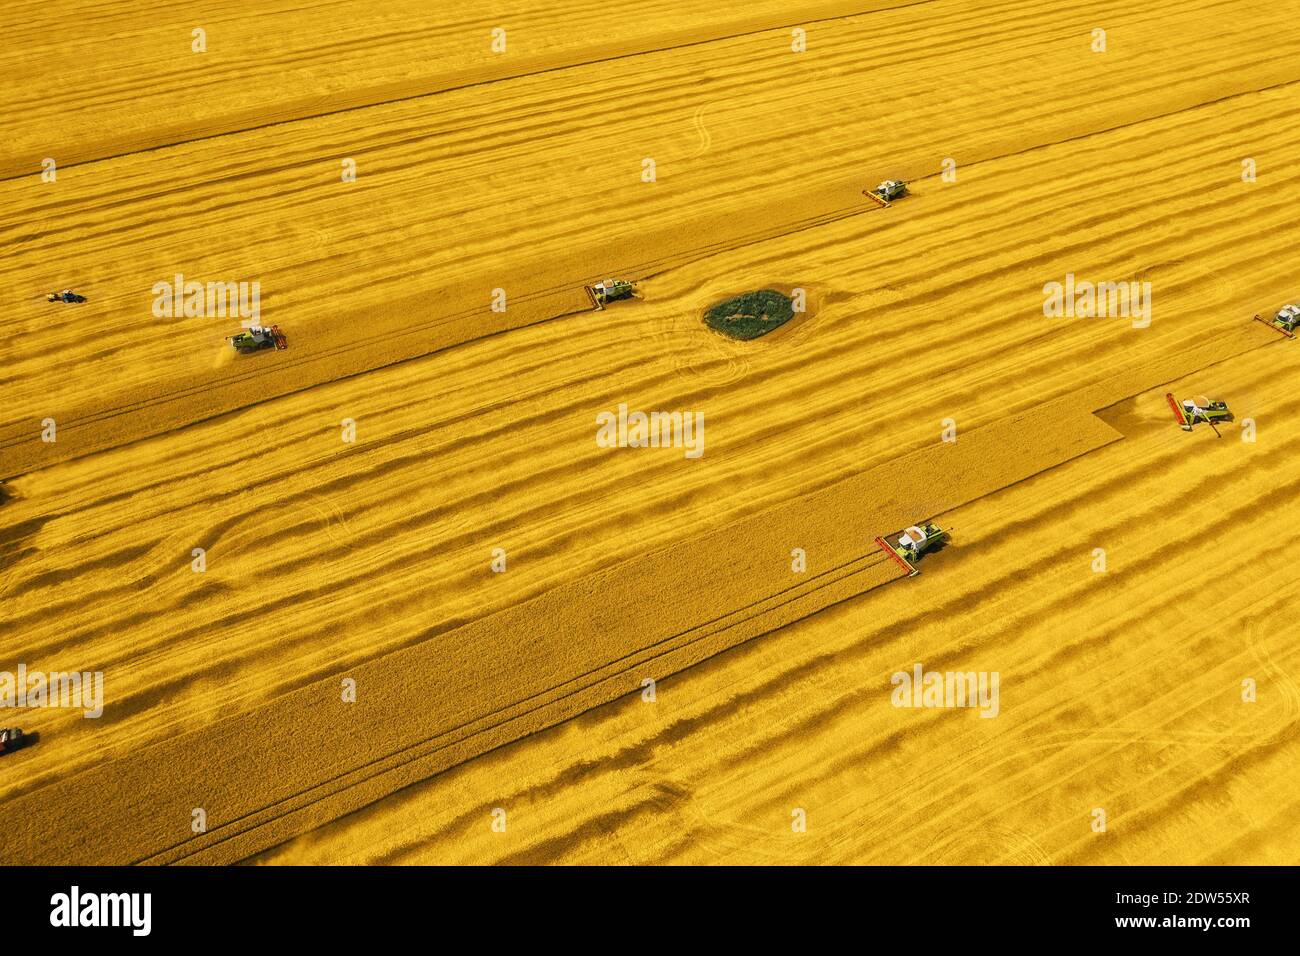 Cosechadoras y cosechadoras que trabajan en el campo de trigo de color amarillo o Fortuna Gold de moda, vista aérea. Foto de stock